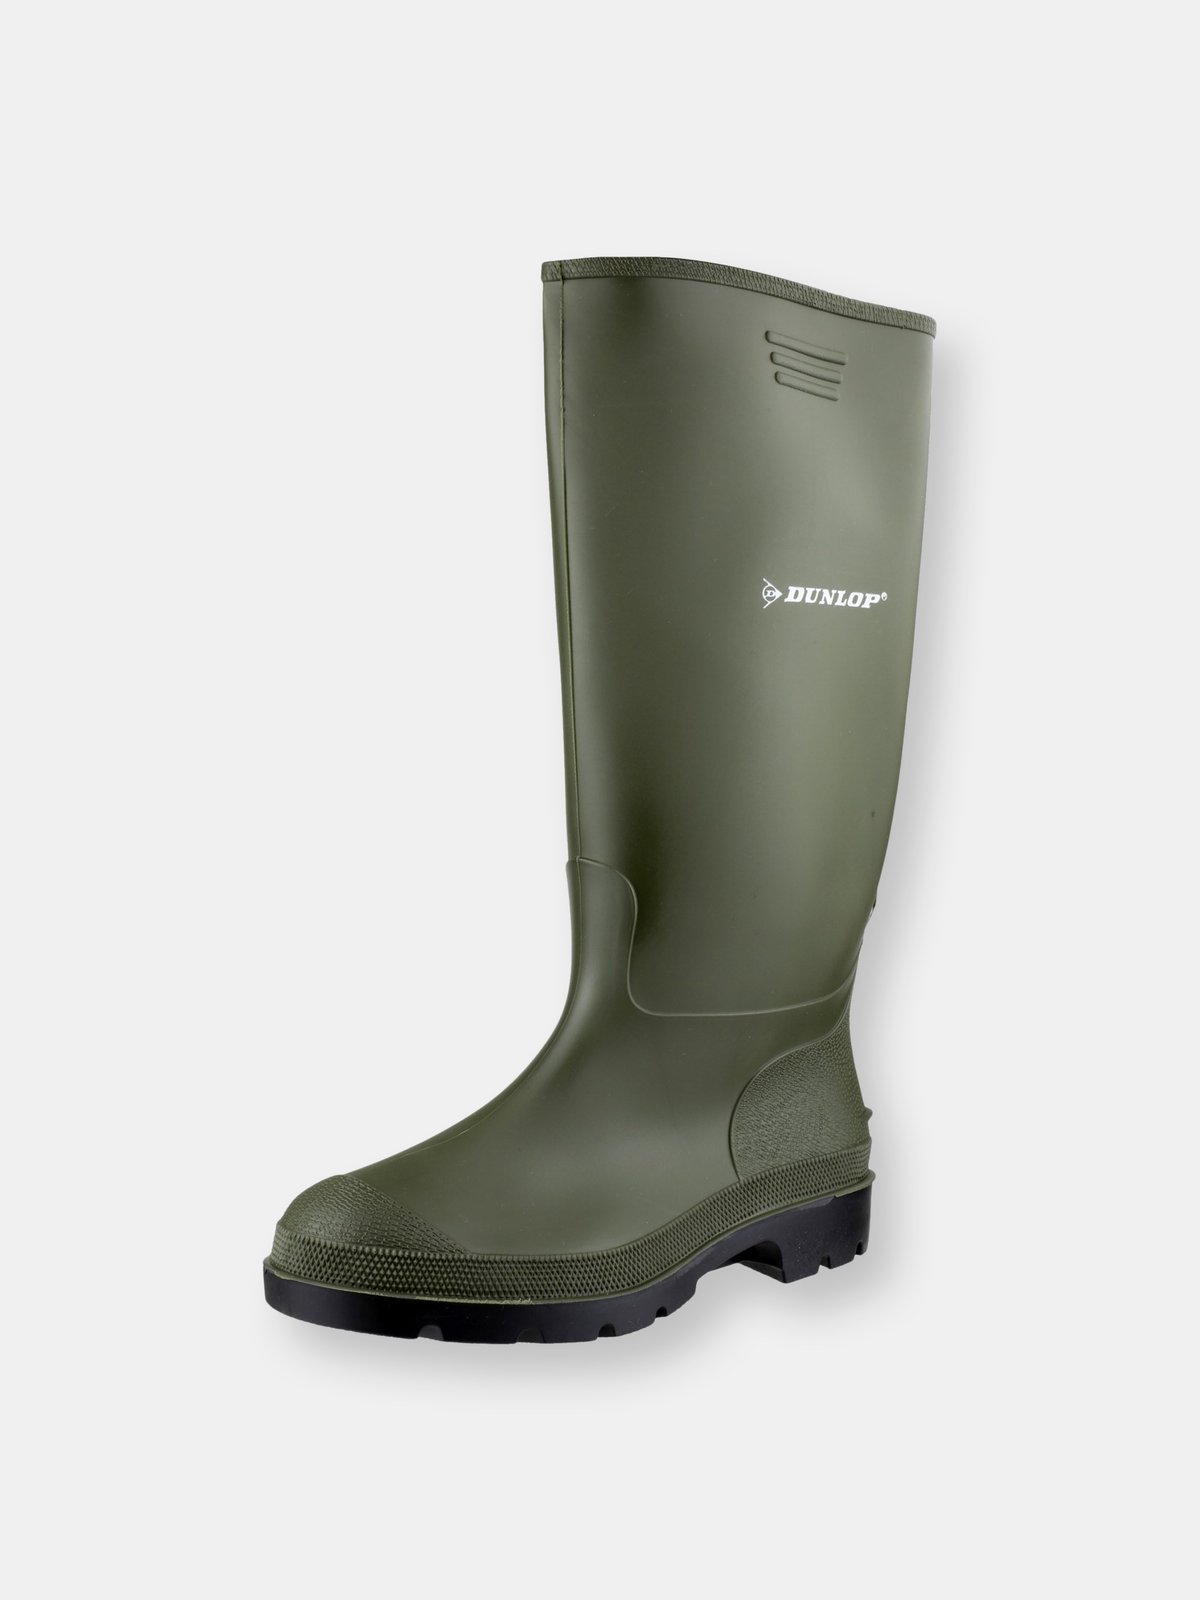 Dunlop Unisex Waterproof Green Wellies Goloshes Garden Shoes Boots Clogs 4-12 